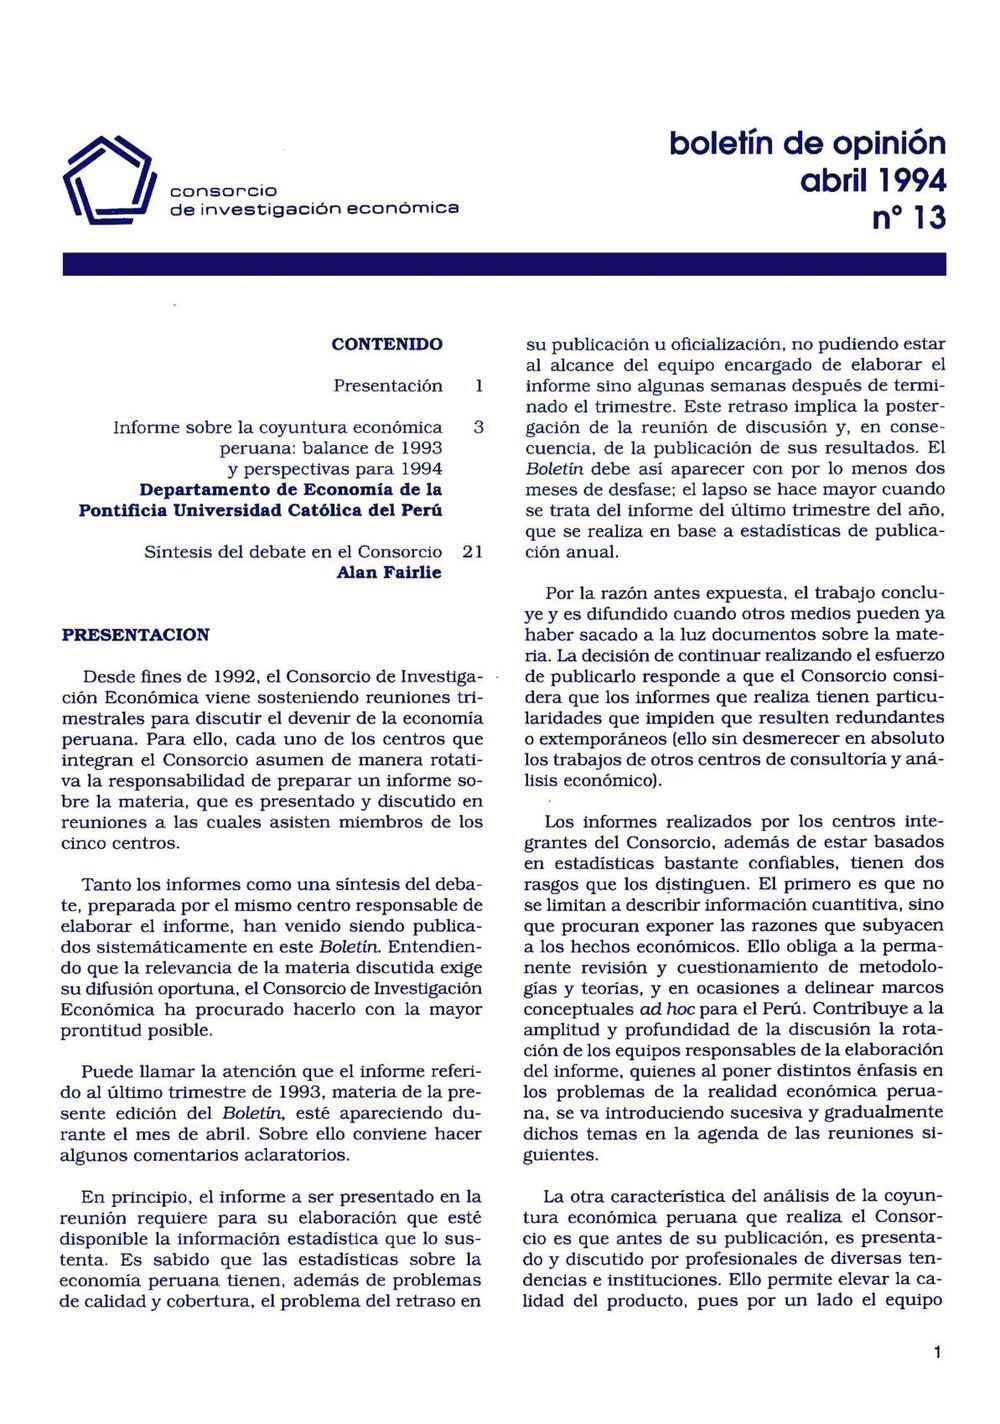 Boletín de opinión: Análisis de la economía peruana, balance 1993 y perspectivas 1994